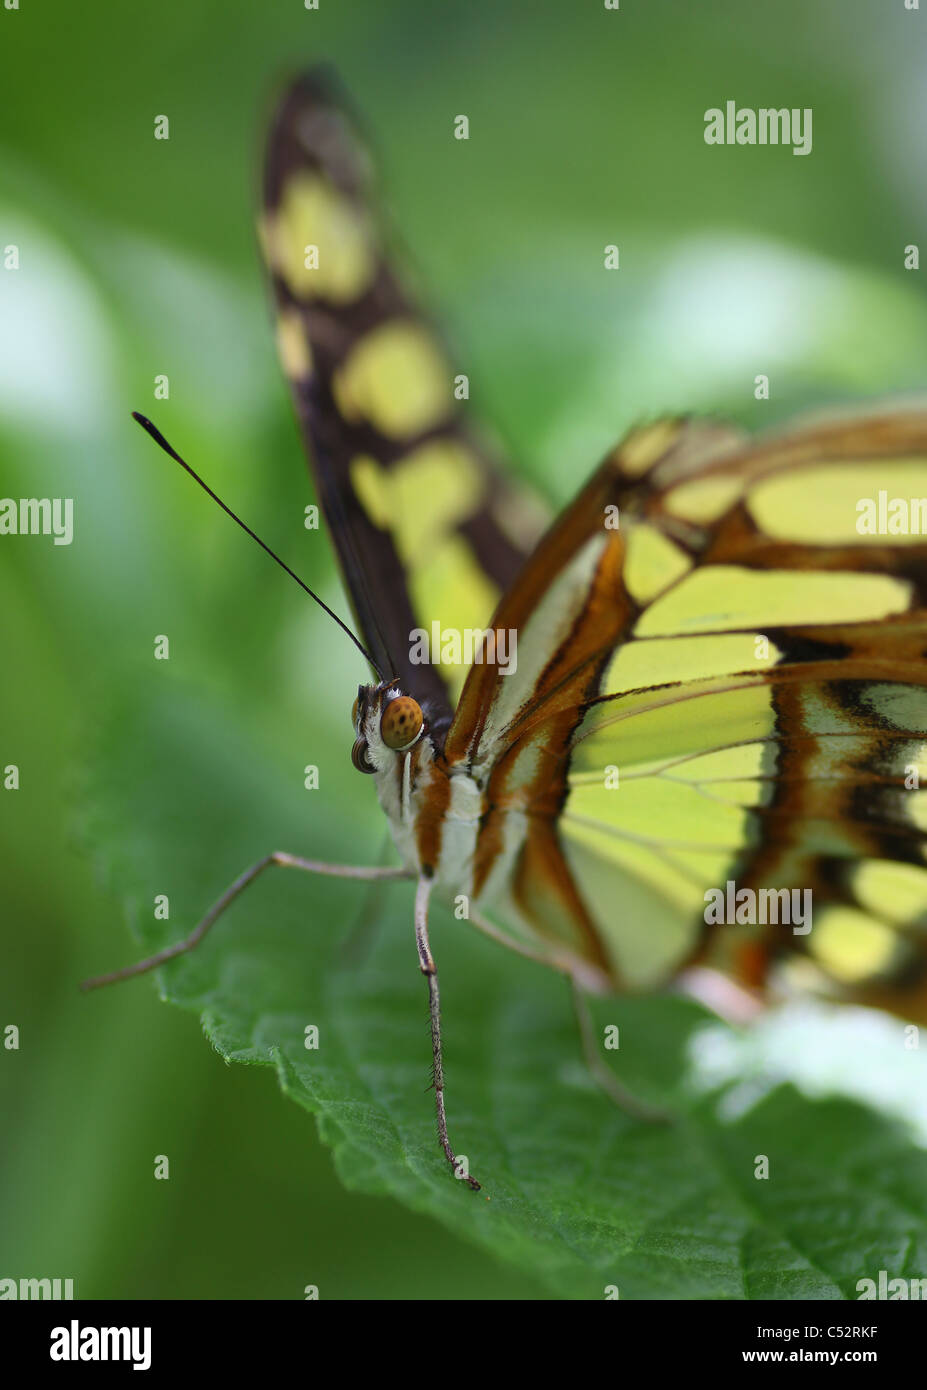 Siproeta stelenes, comunemente noto come la malachite, è una spazzola neotropical-footed butterfly (Famiglia Nymphalidae) Foto Stock